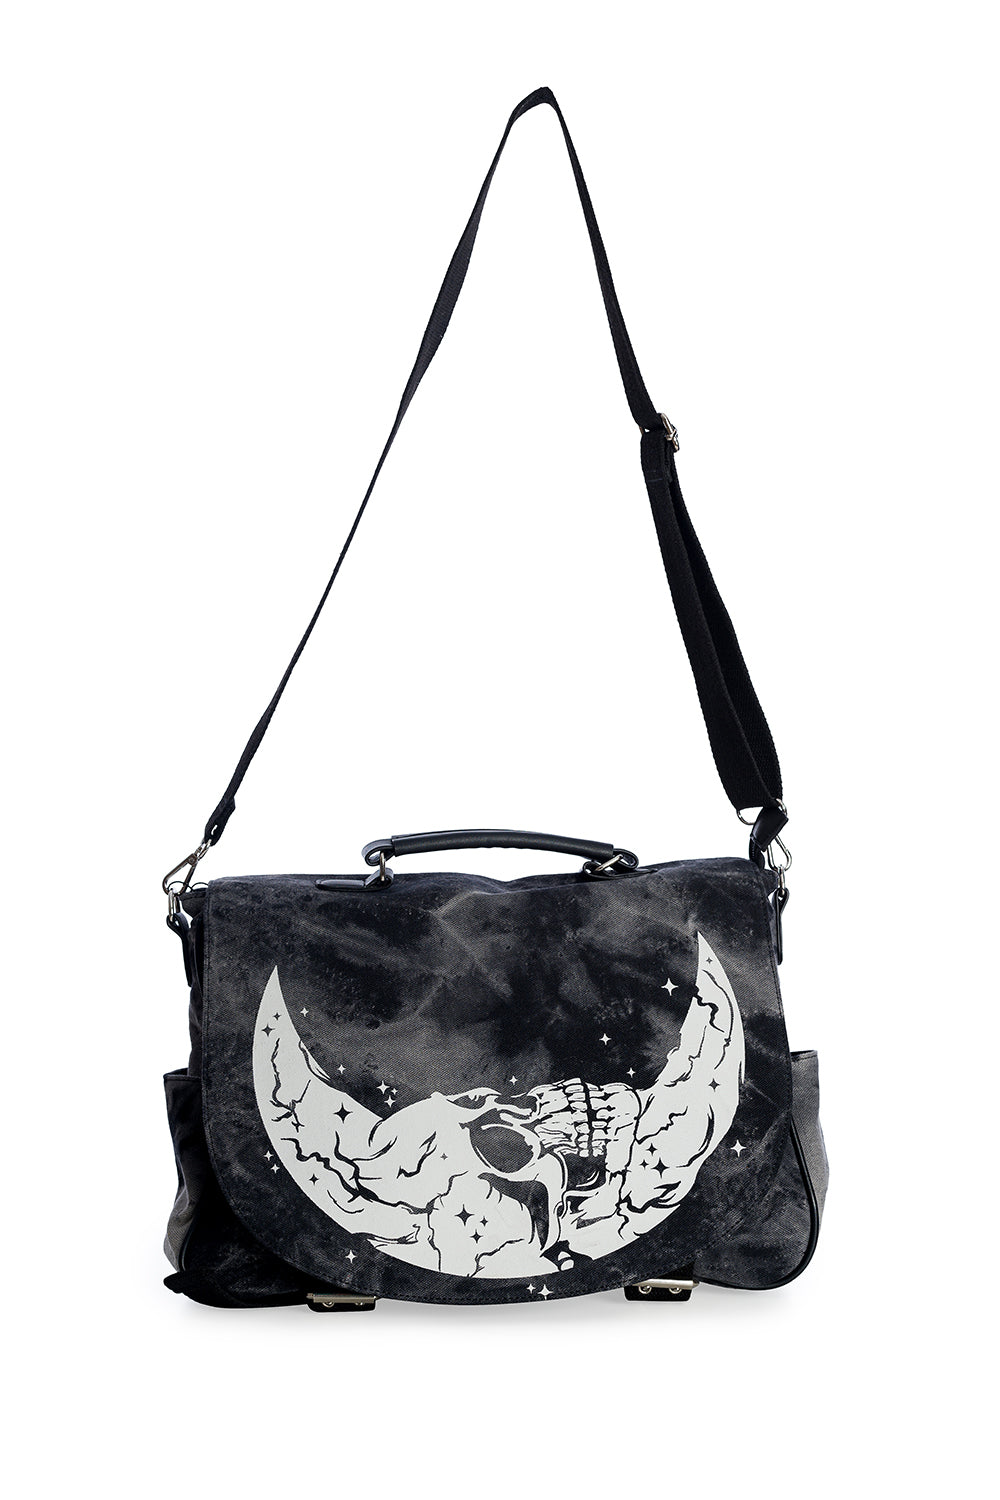 Over the shoulder messenger bag, distressed with moon/skull motif 